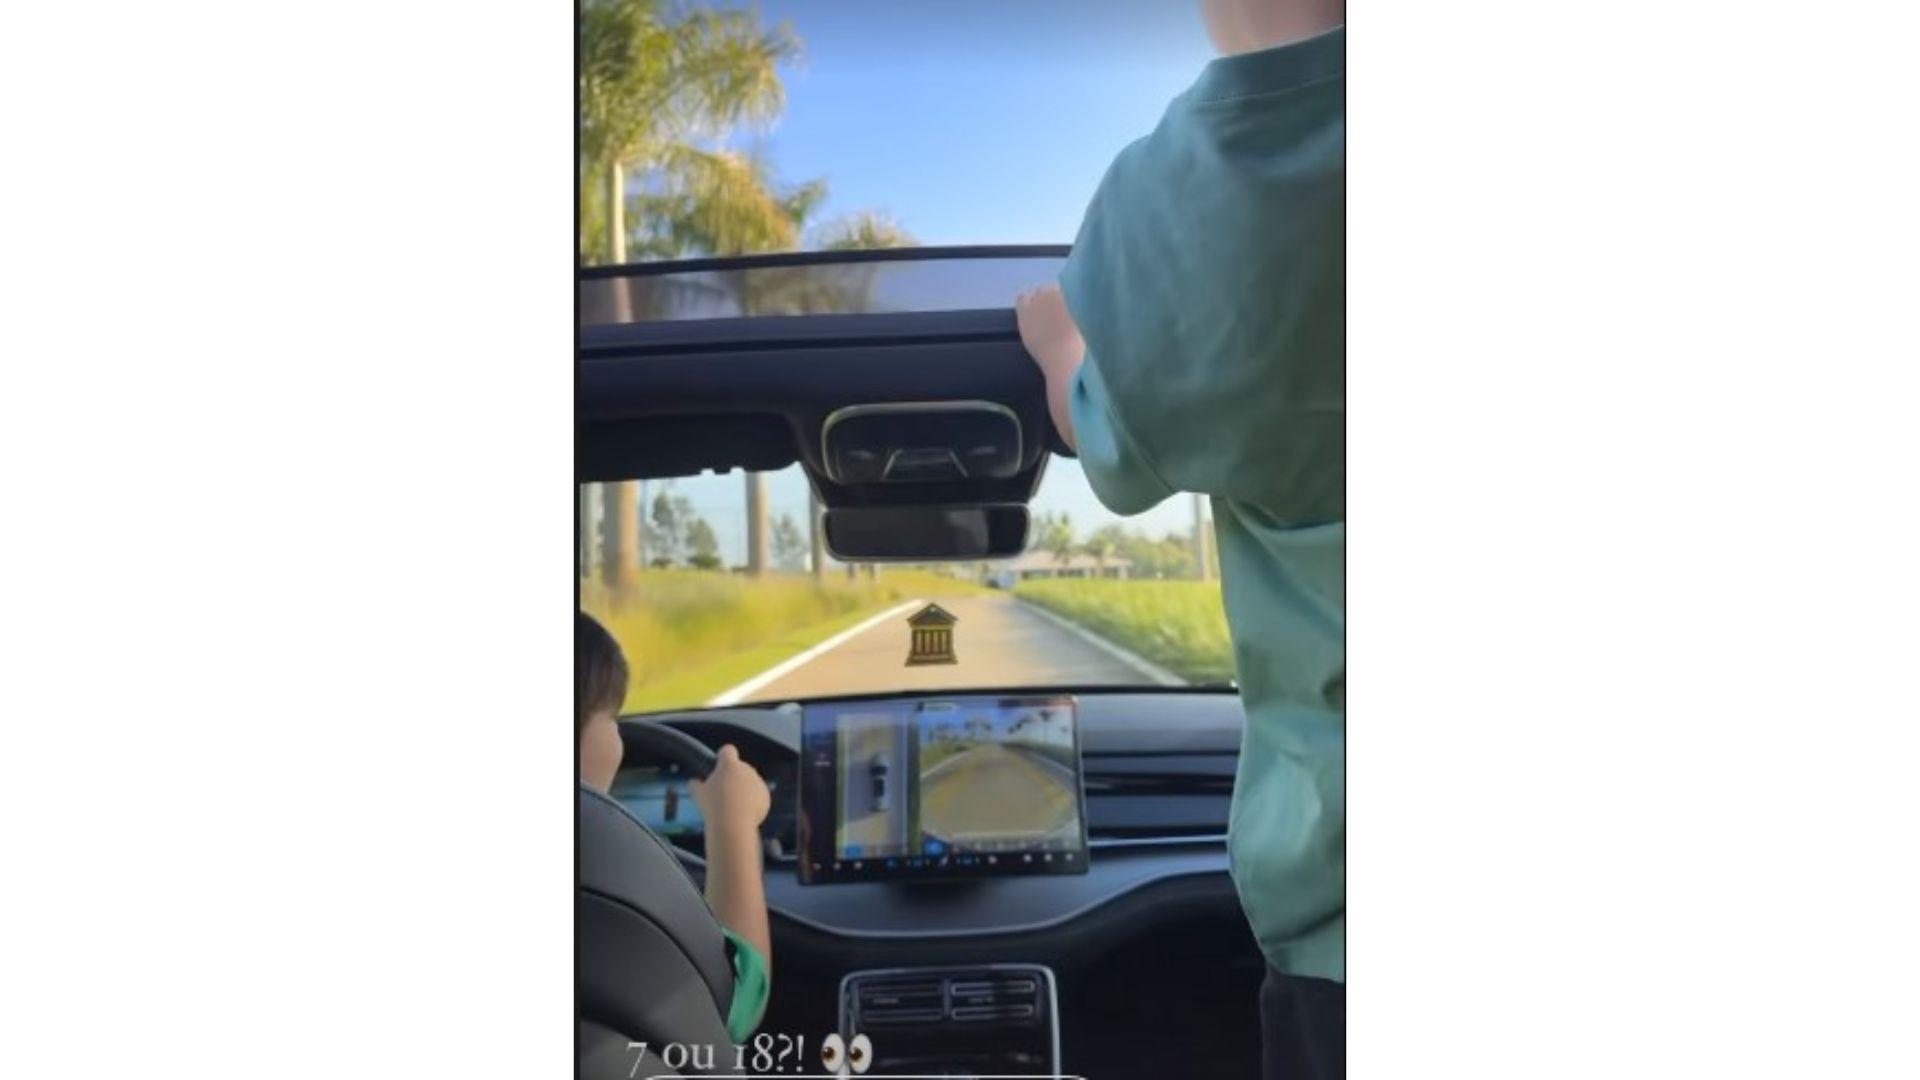 Crianças em um carro